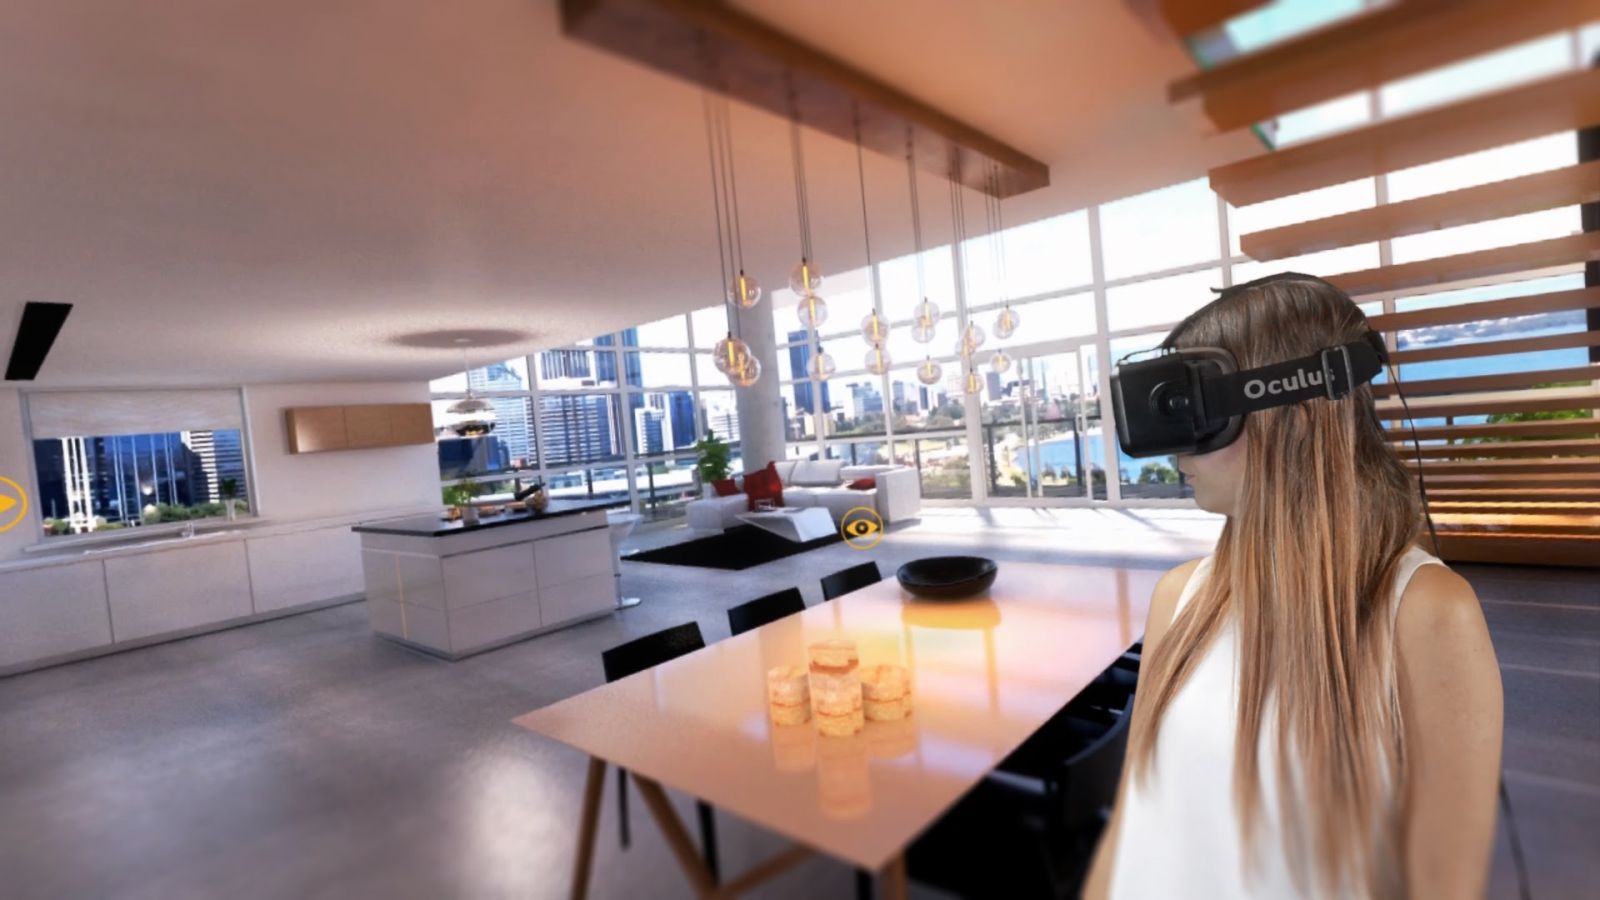 hình ảnh cô gái sử dụng công nghệ thực tế ảo để trải nghiệm không gian trong căn hộ mình định mua